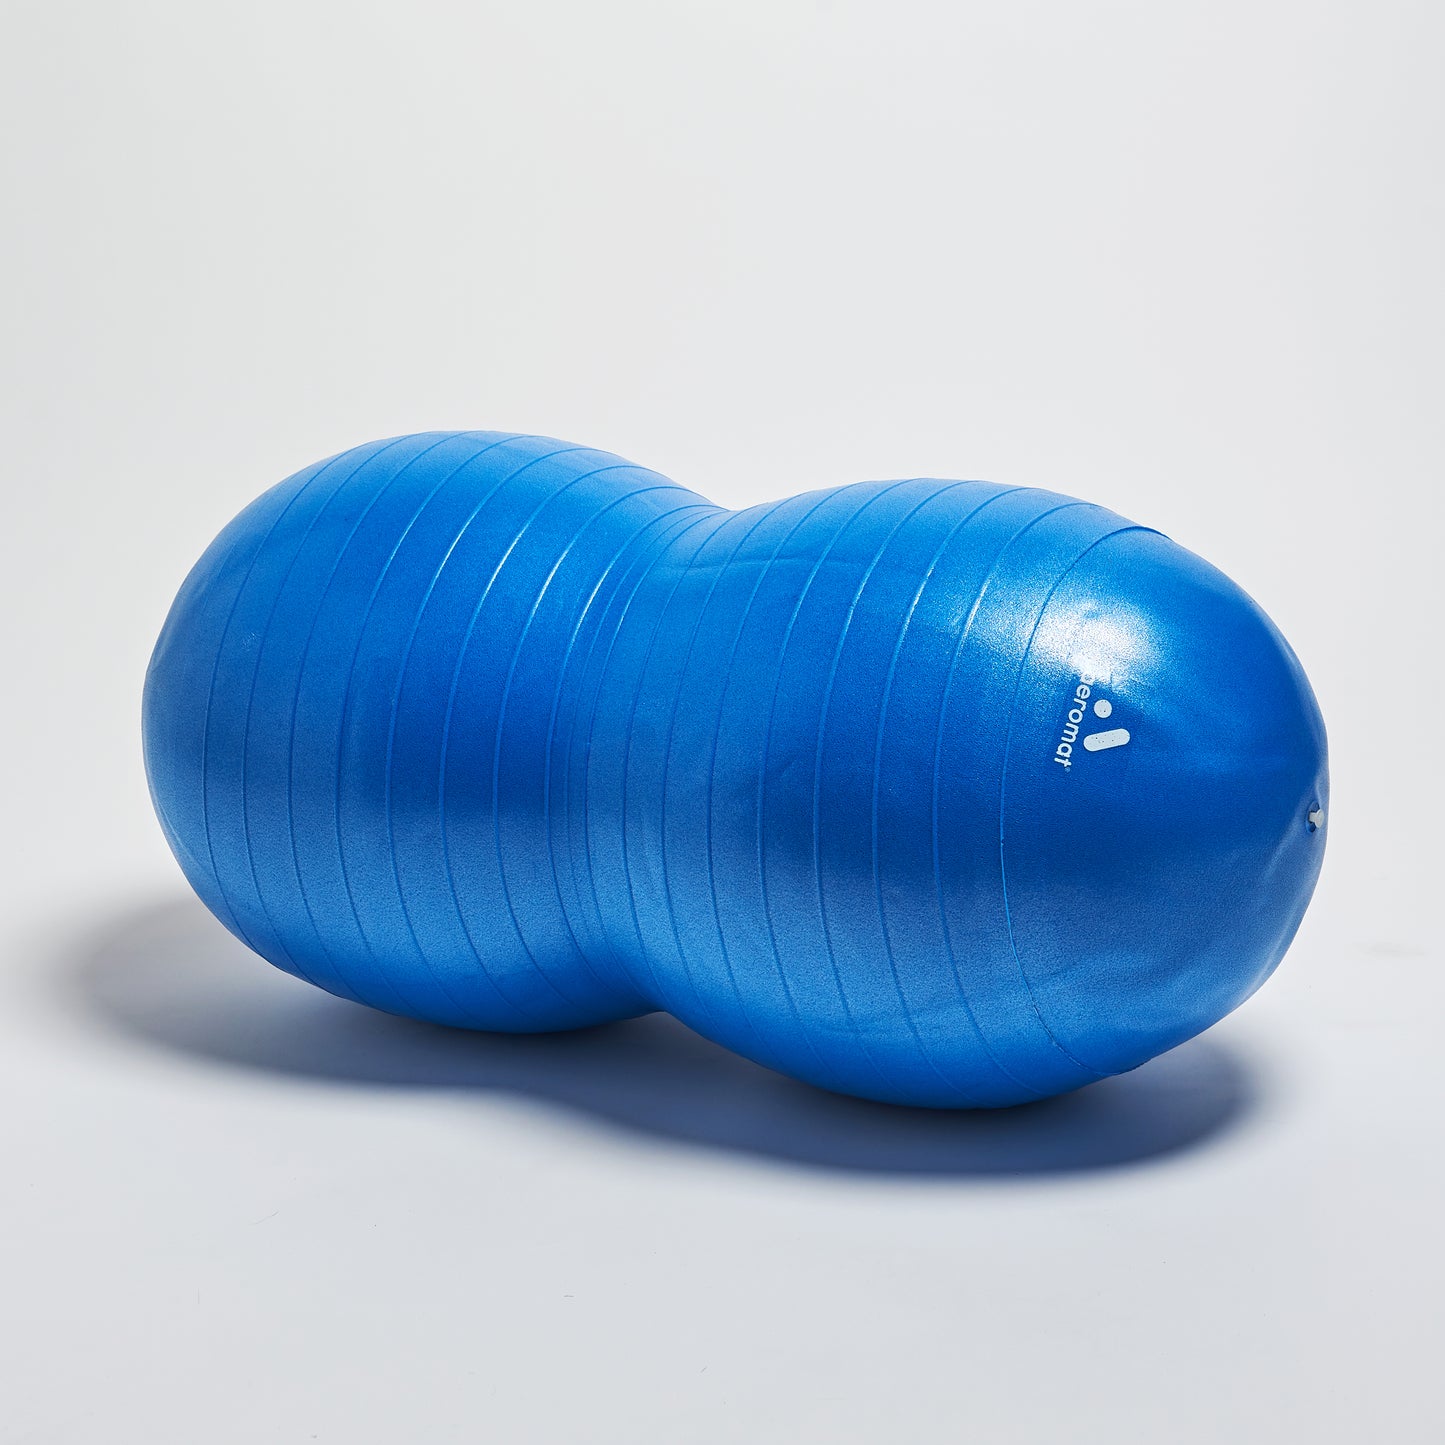 50 cm diameter (Blue)